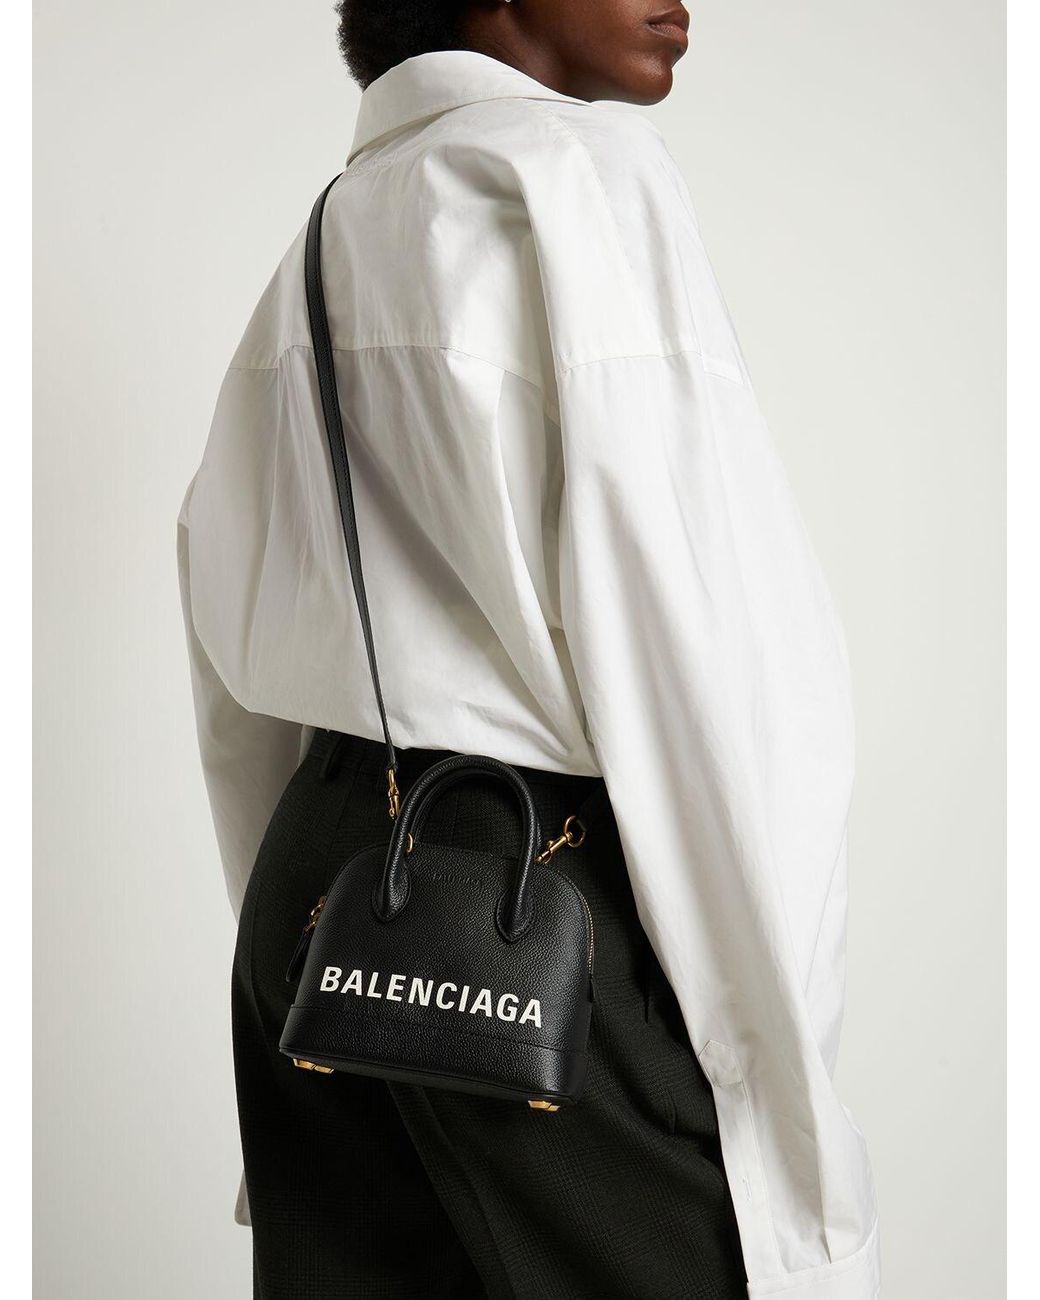 Balenciaga Ville Xxs Top Handle Bag in White